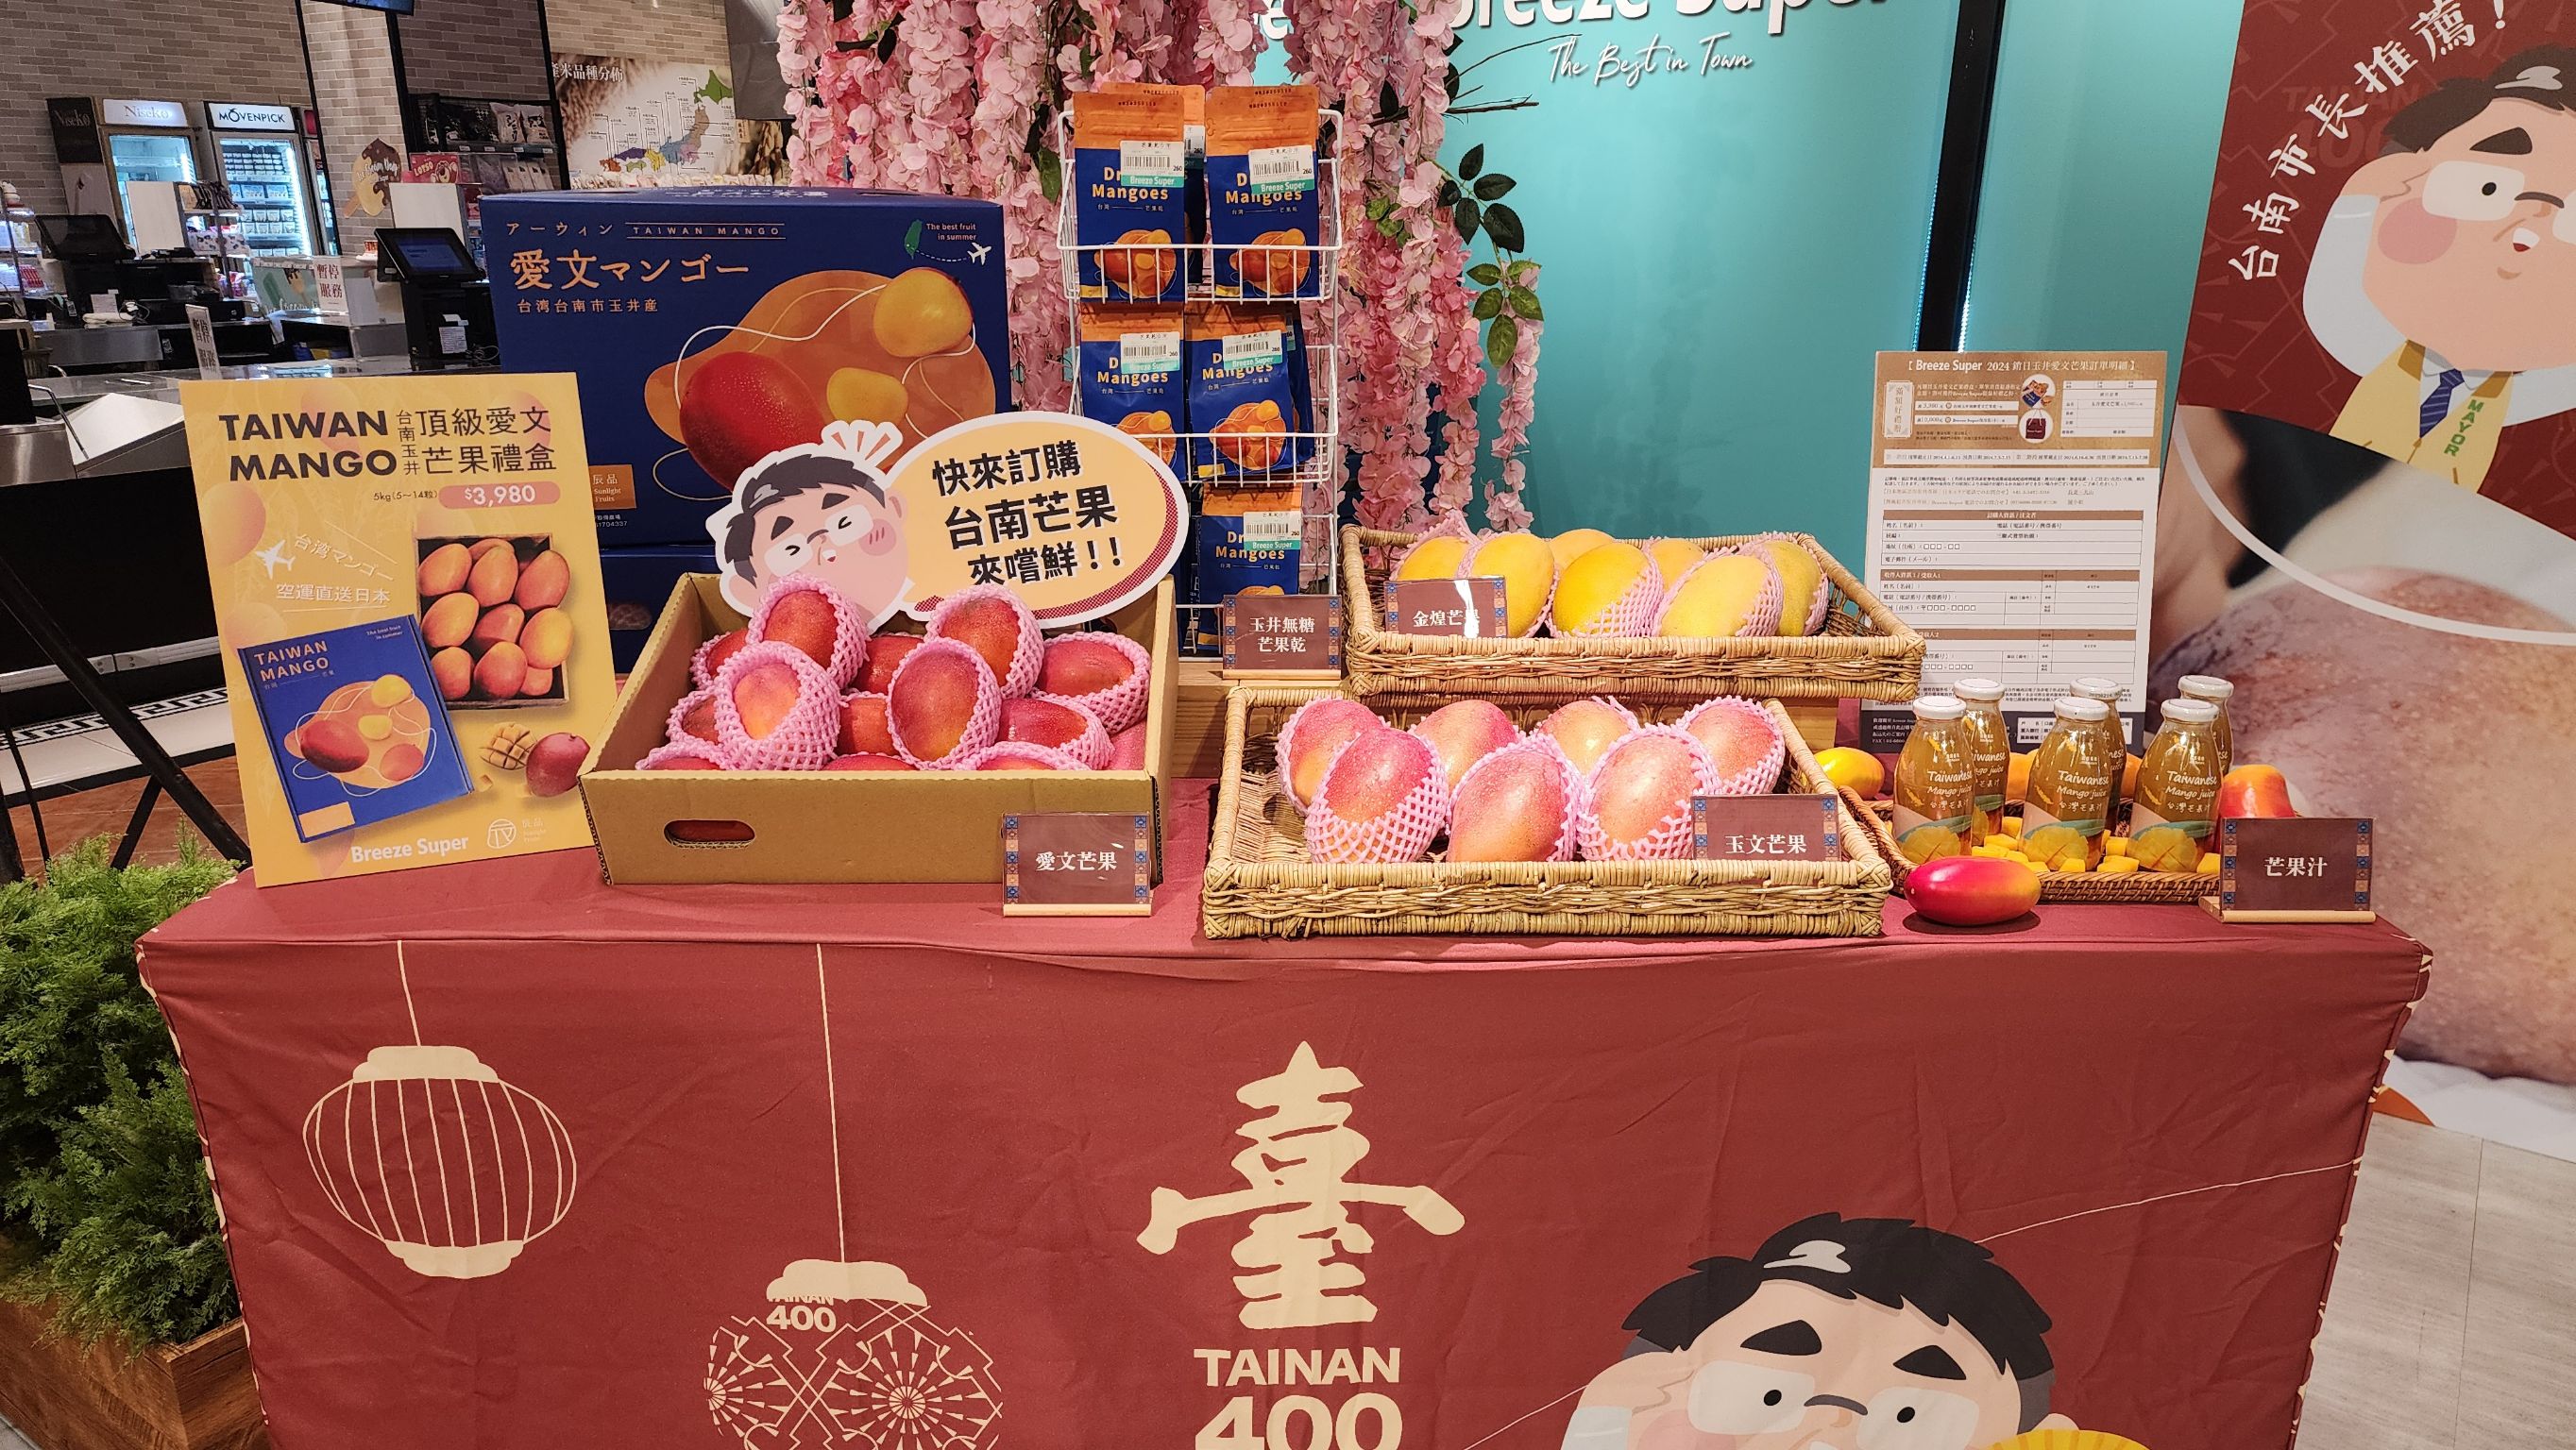 臺南芒果風靡日本 微風超市盛大預購跨境直送日本